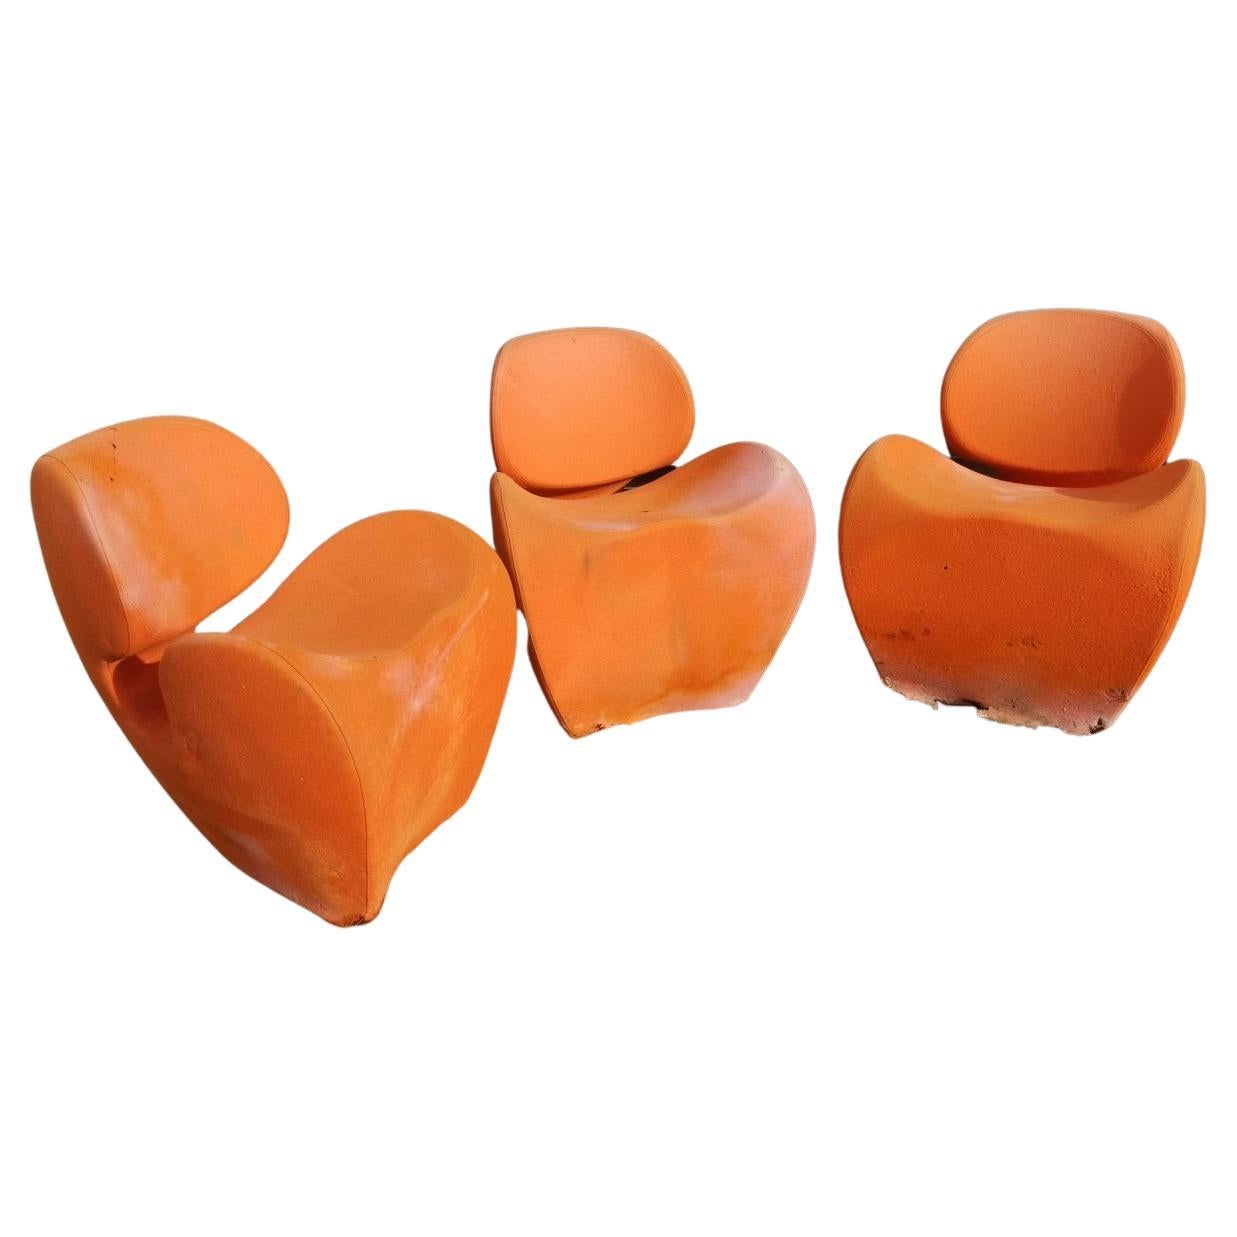 Ron Arad circa 1991, Quatre grands fauteuils souples et orange lourd fabriqués par Moroso, Italie